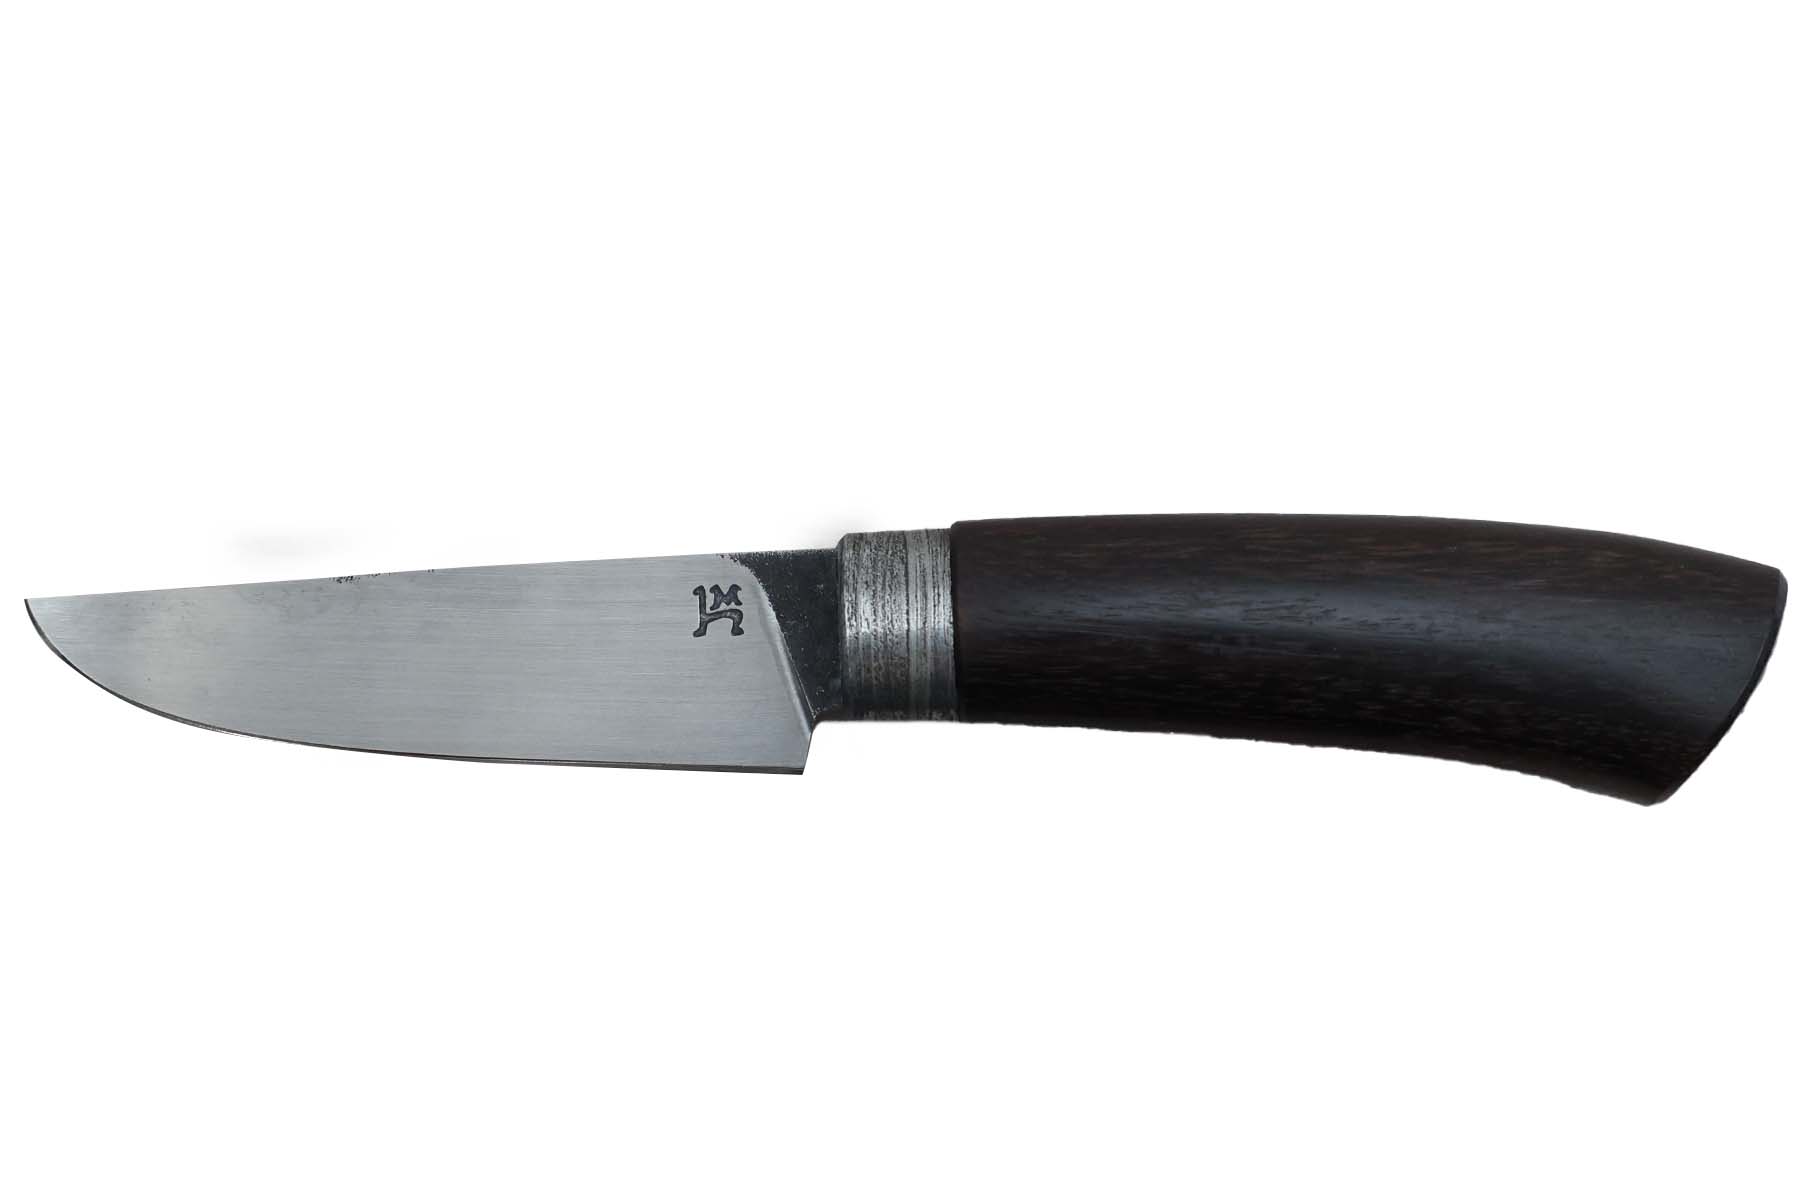 Couteau fixe artisanal par "Hugo Milesi", modèle utilitaire - Sonokeling